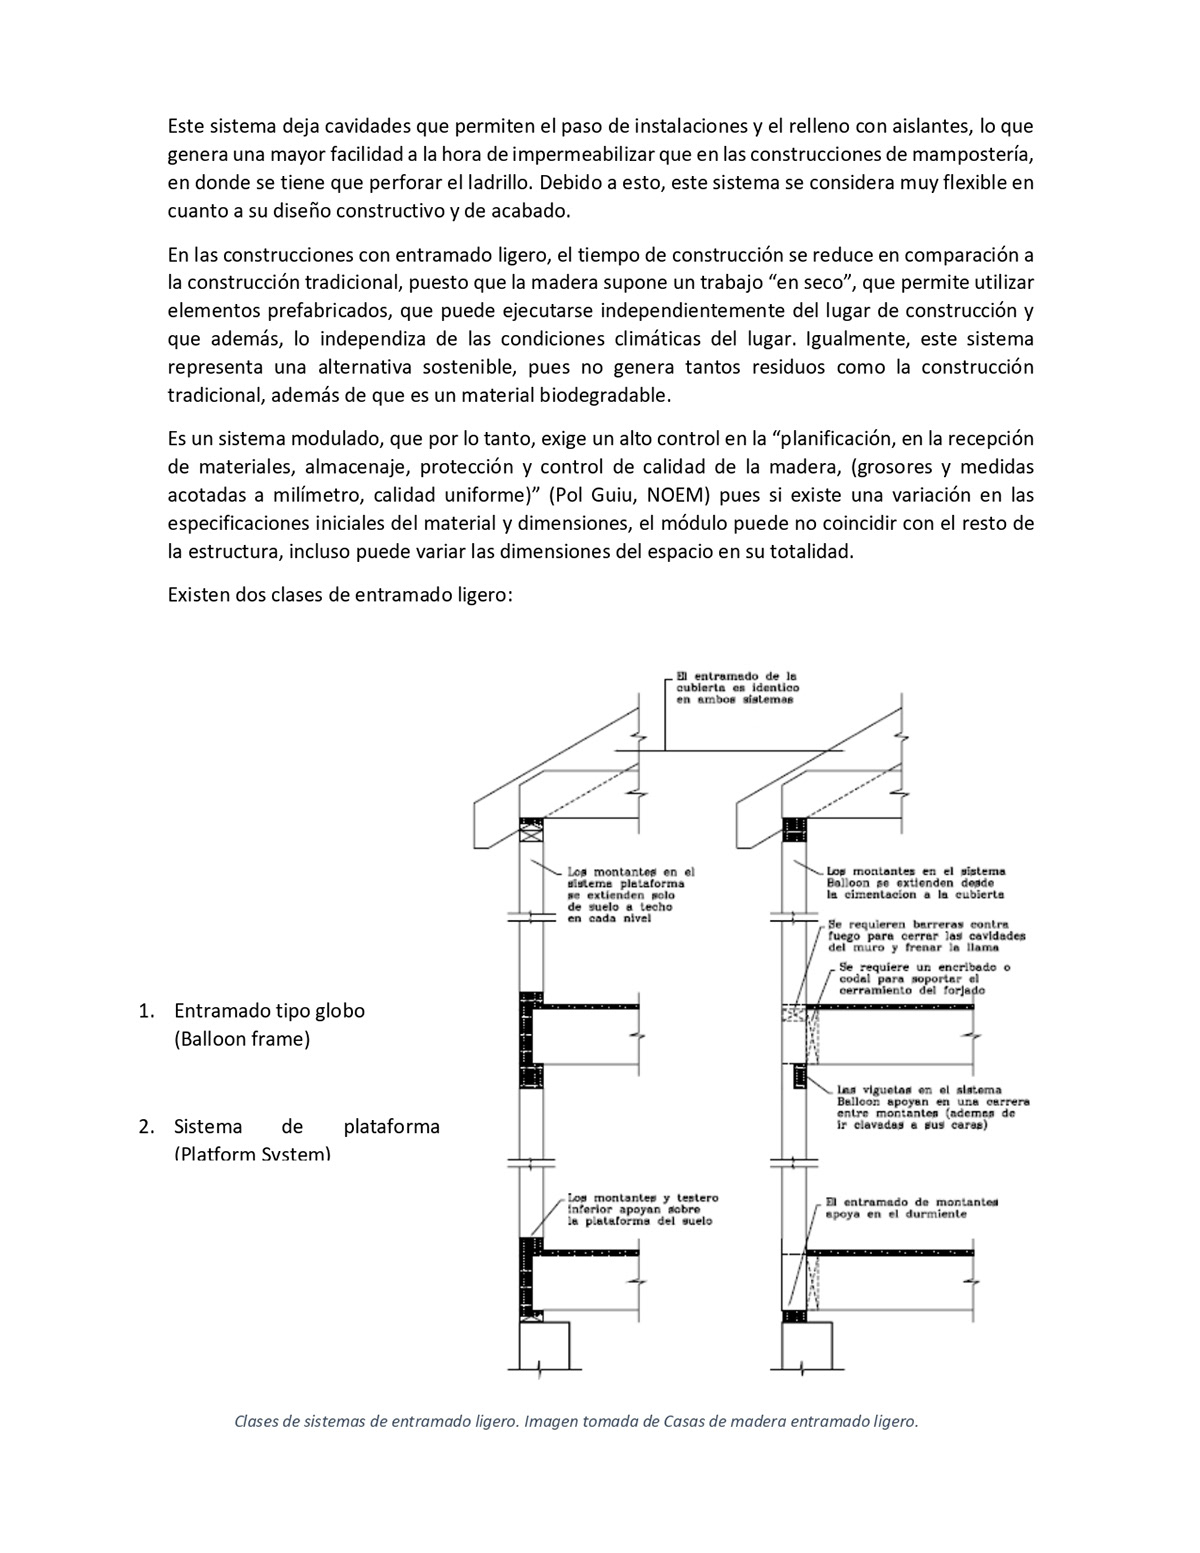 seminario estructuras en madera construccion fuerzas Pino uniones Analisis Enrique Ramirez